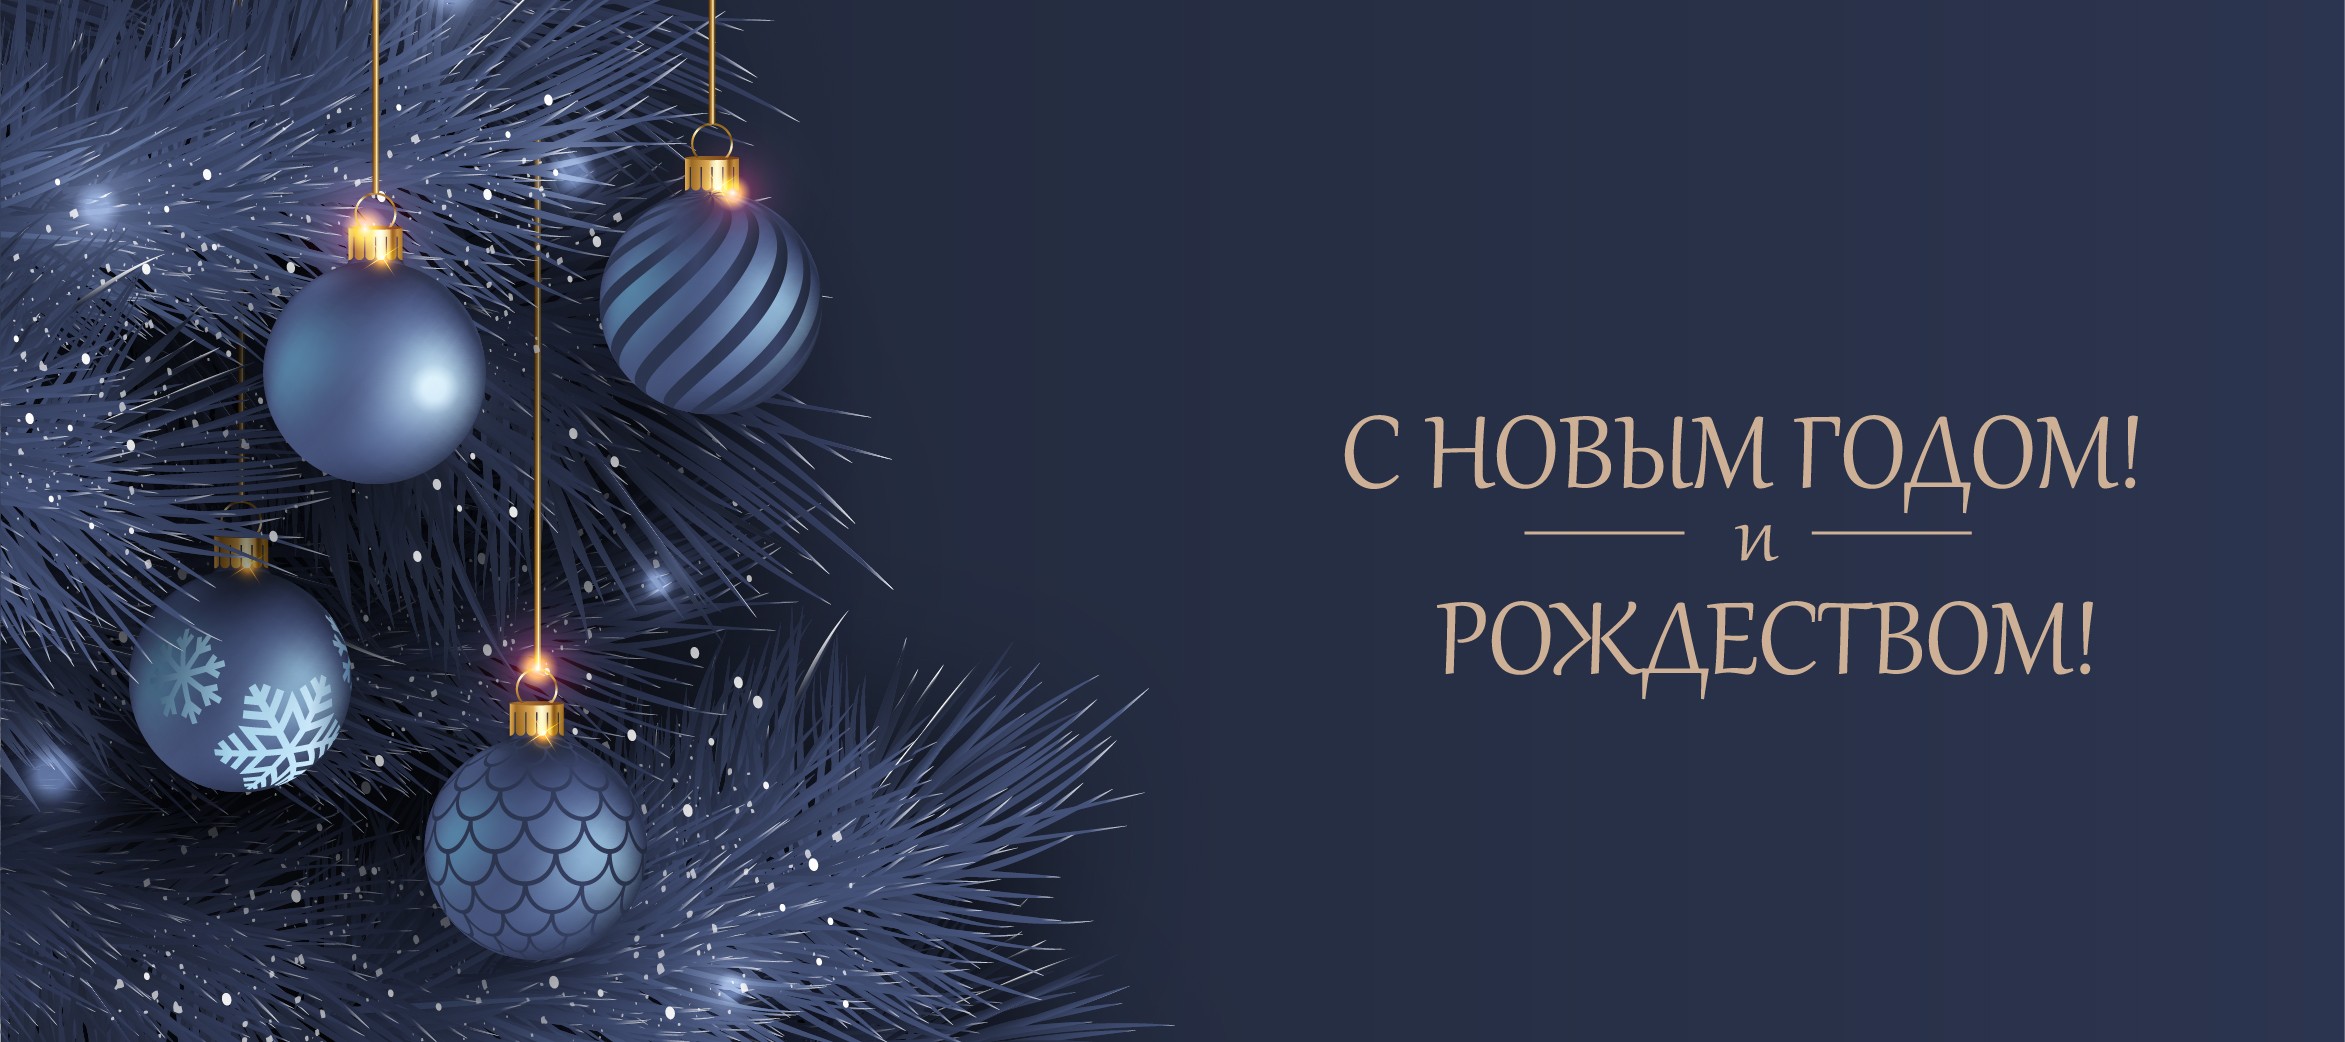 Поздравляем с наступающим Новым годом и Рождеством!